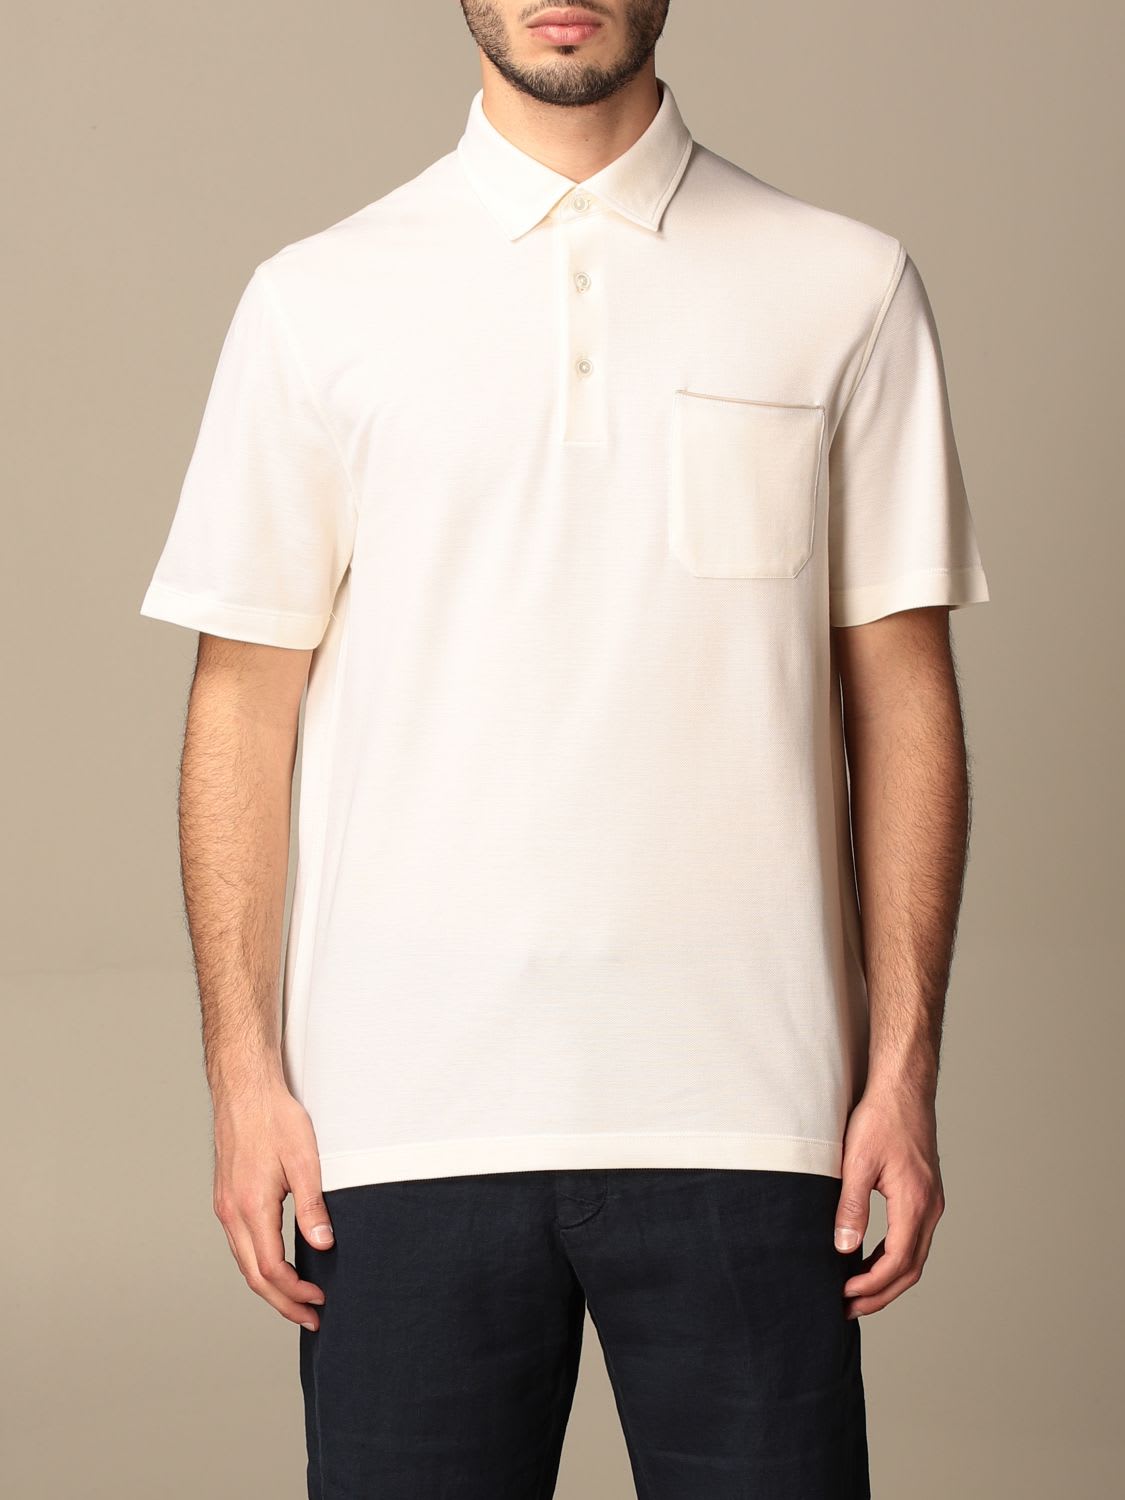 Ermenegildo Zegna Polo Shirt Ermenegildo Zegna Cotton Polo Shirt With Patch Pocket